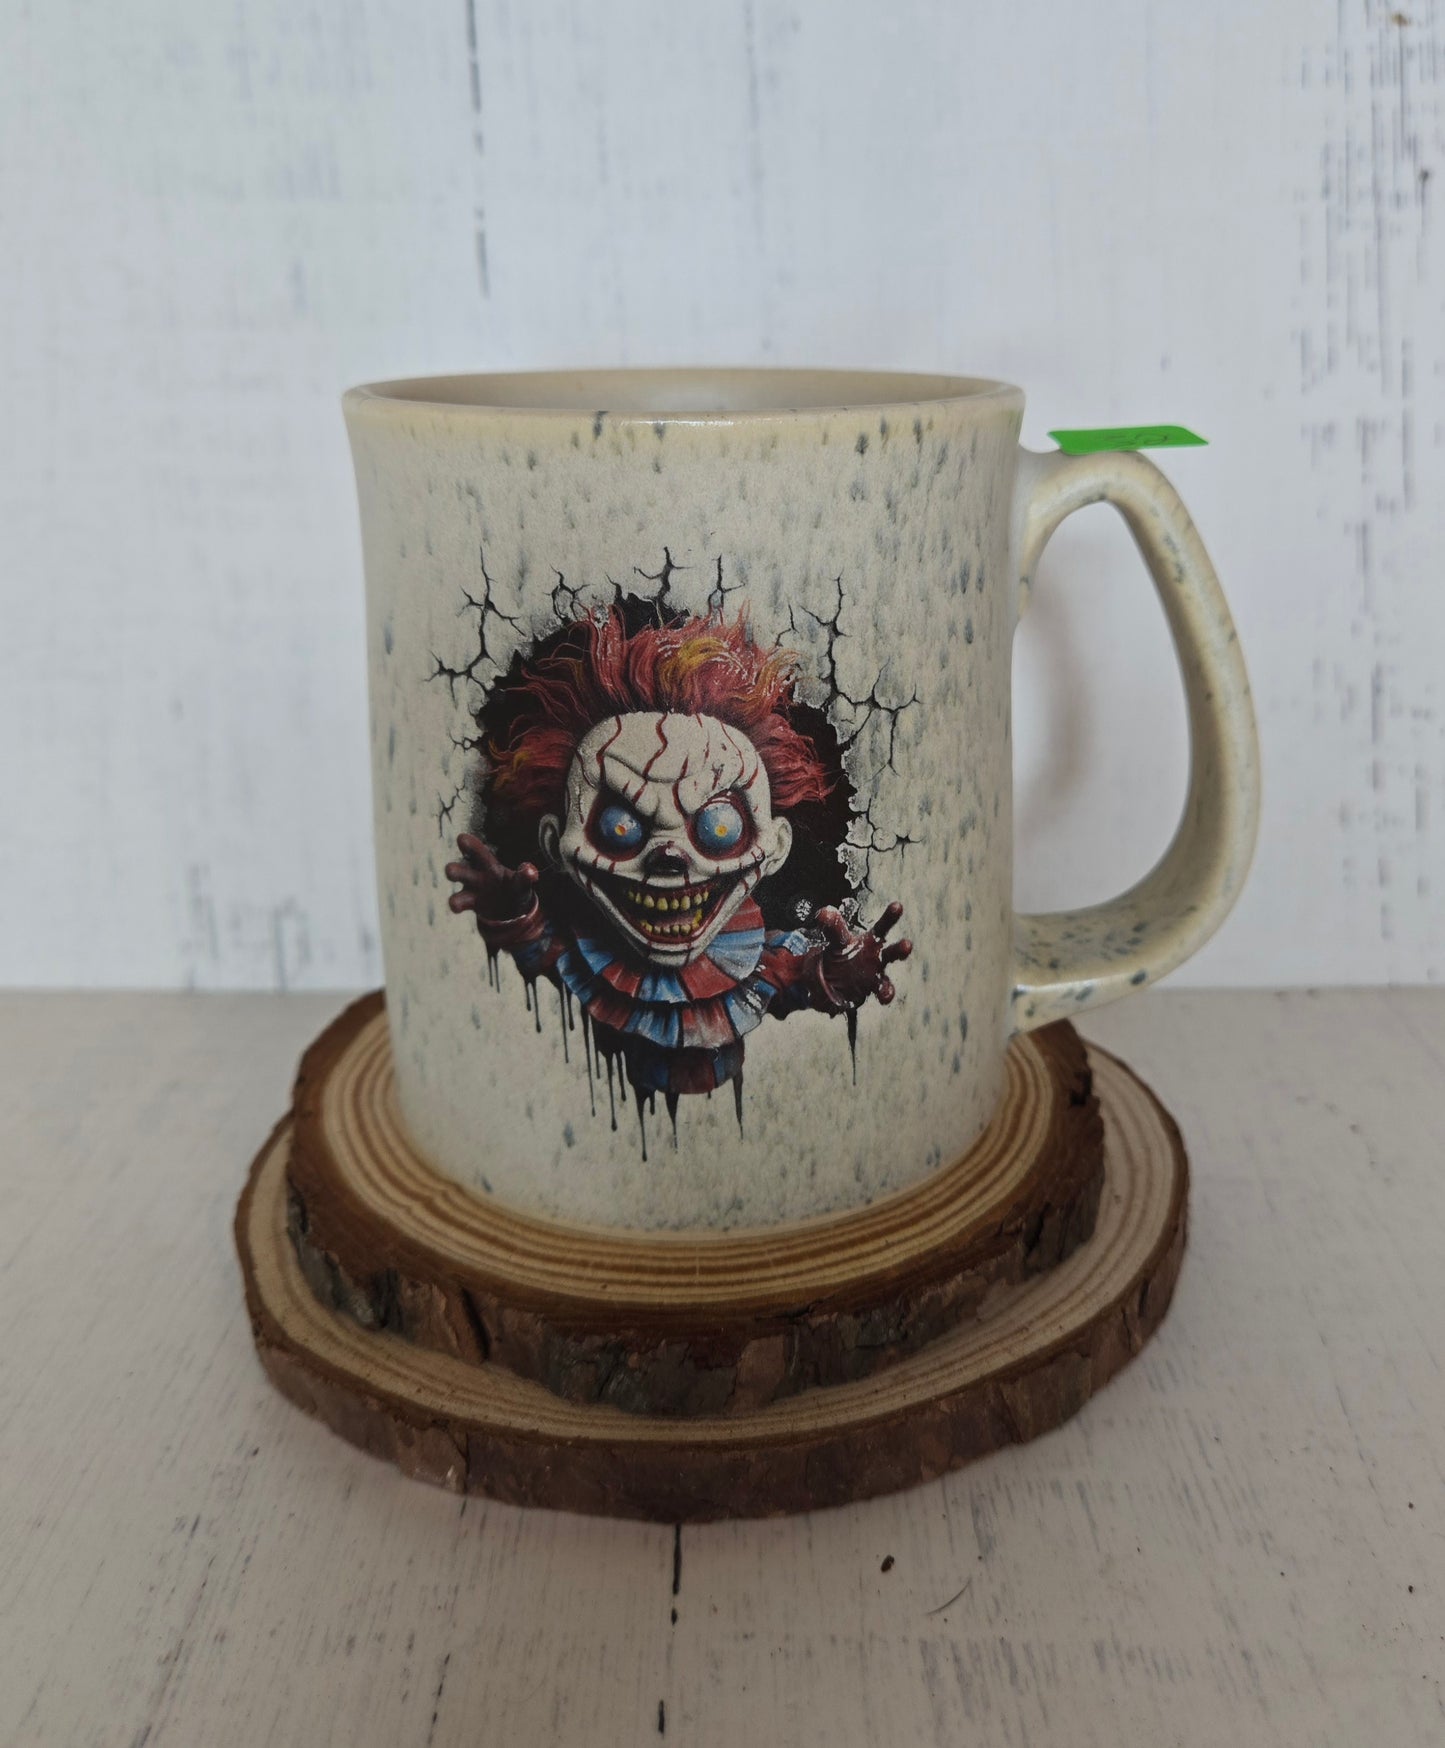 32. Scary Clown Mug 14 oz